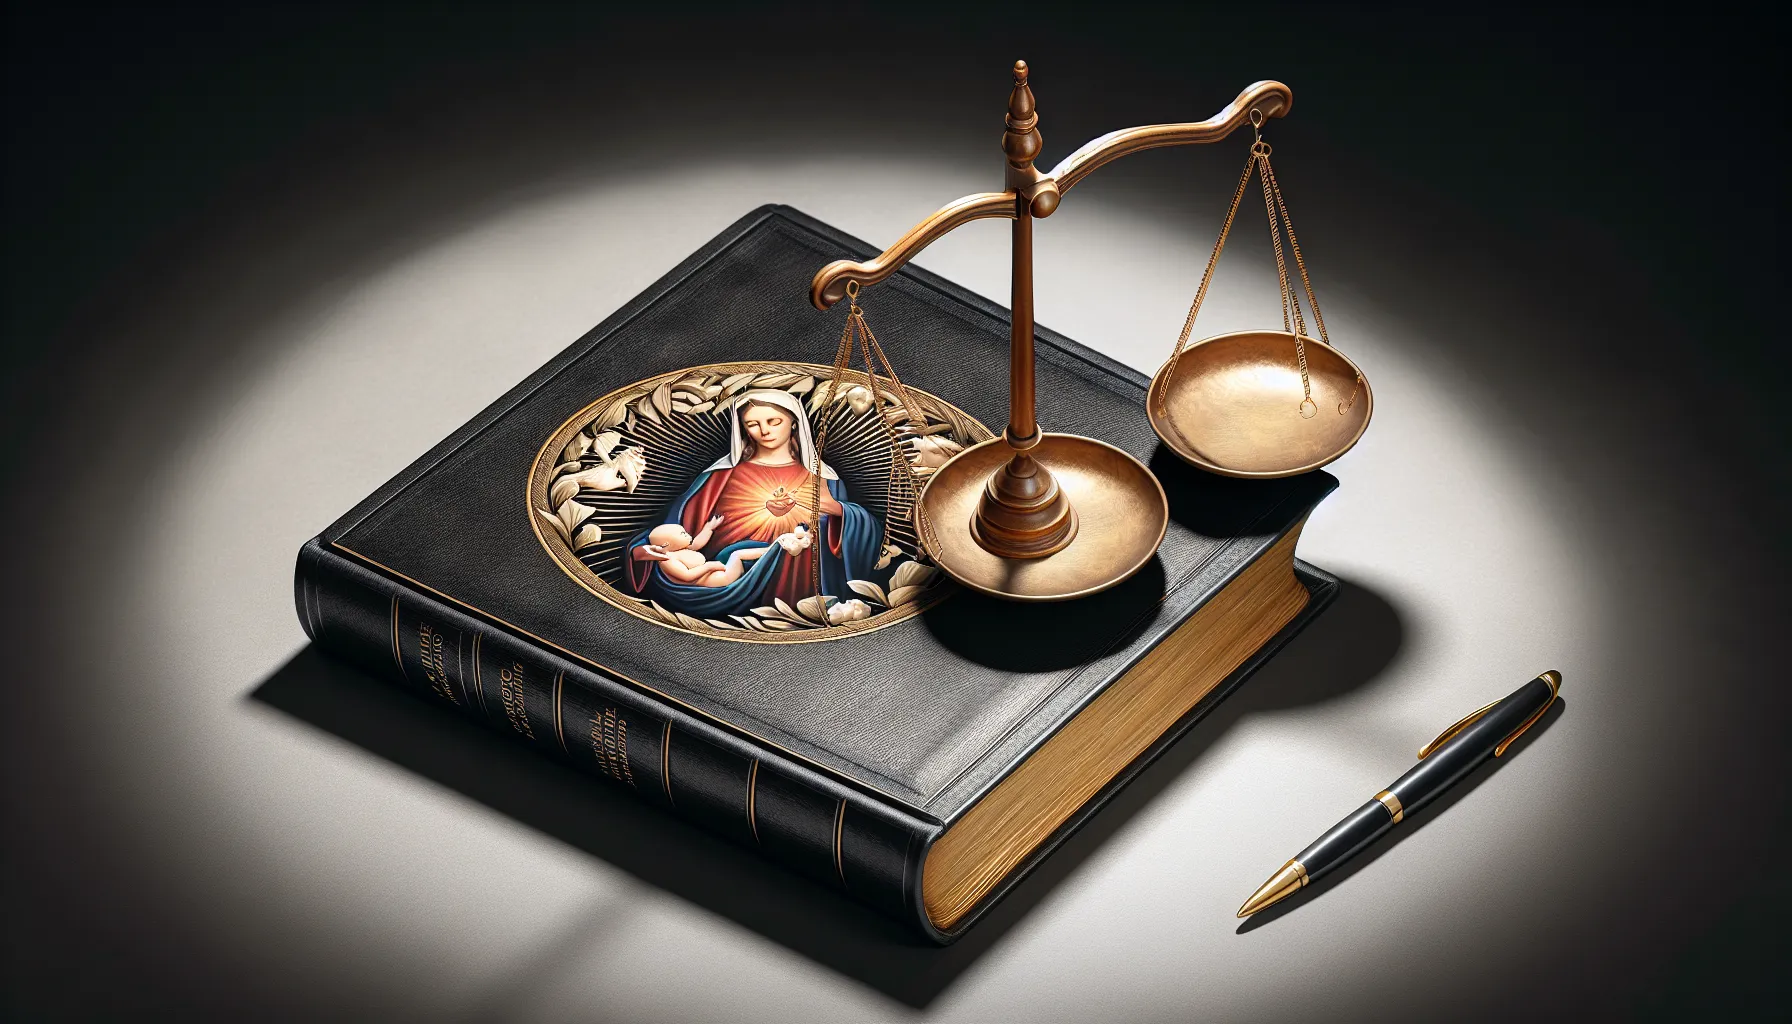 Imagen ilustrativa de un libro sagrado siendo consultado junto a una balanza